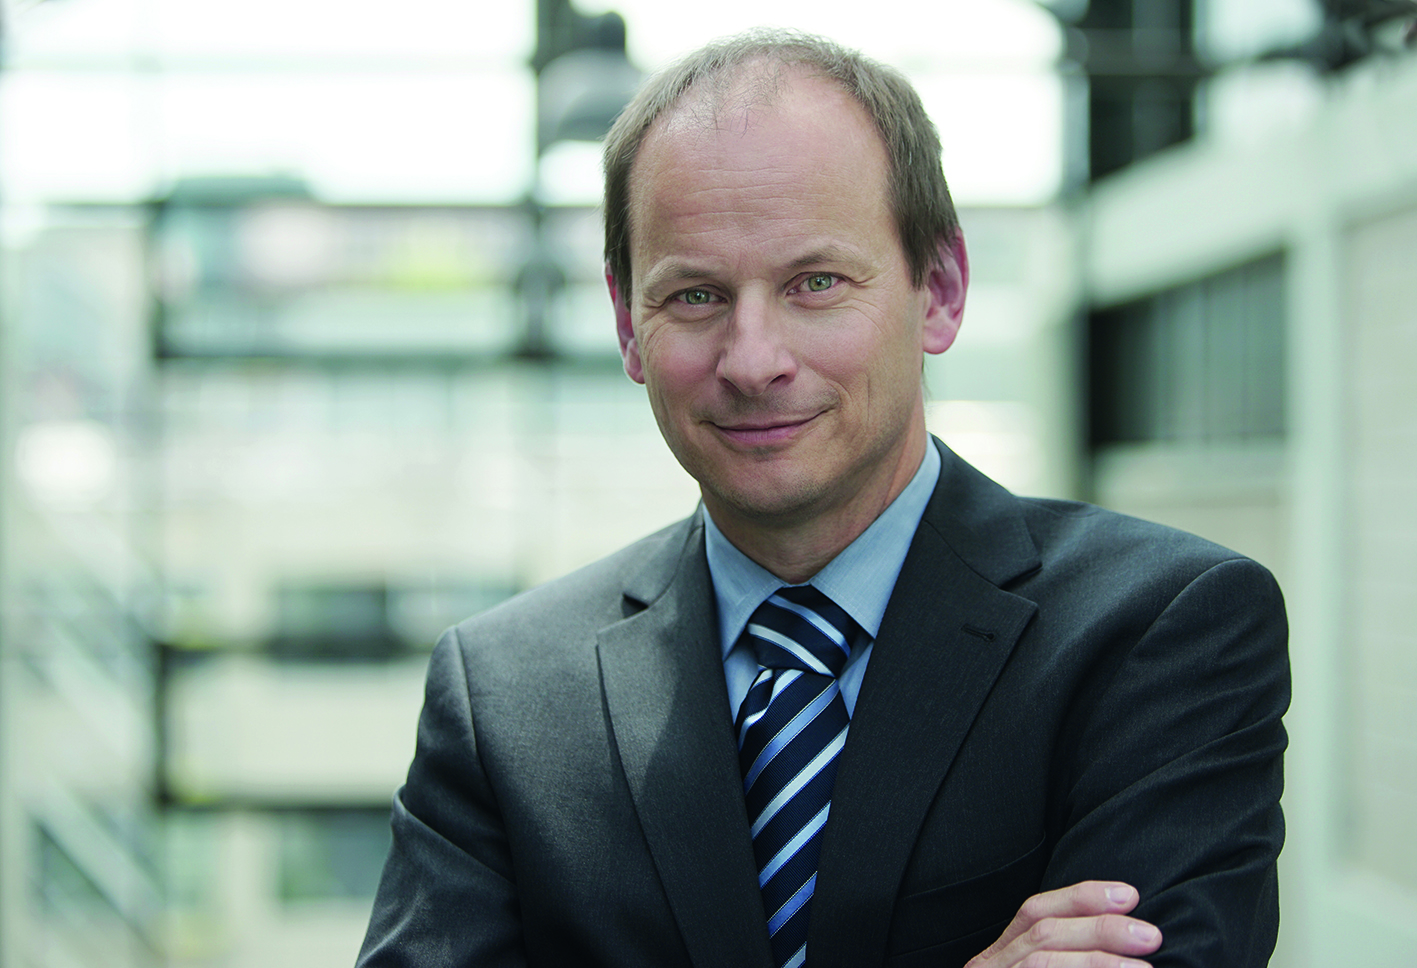 Prof. Constantin Häfner, Director of the Fraunhofer ILT in Aachen.